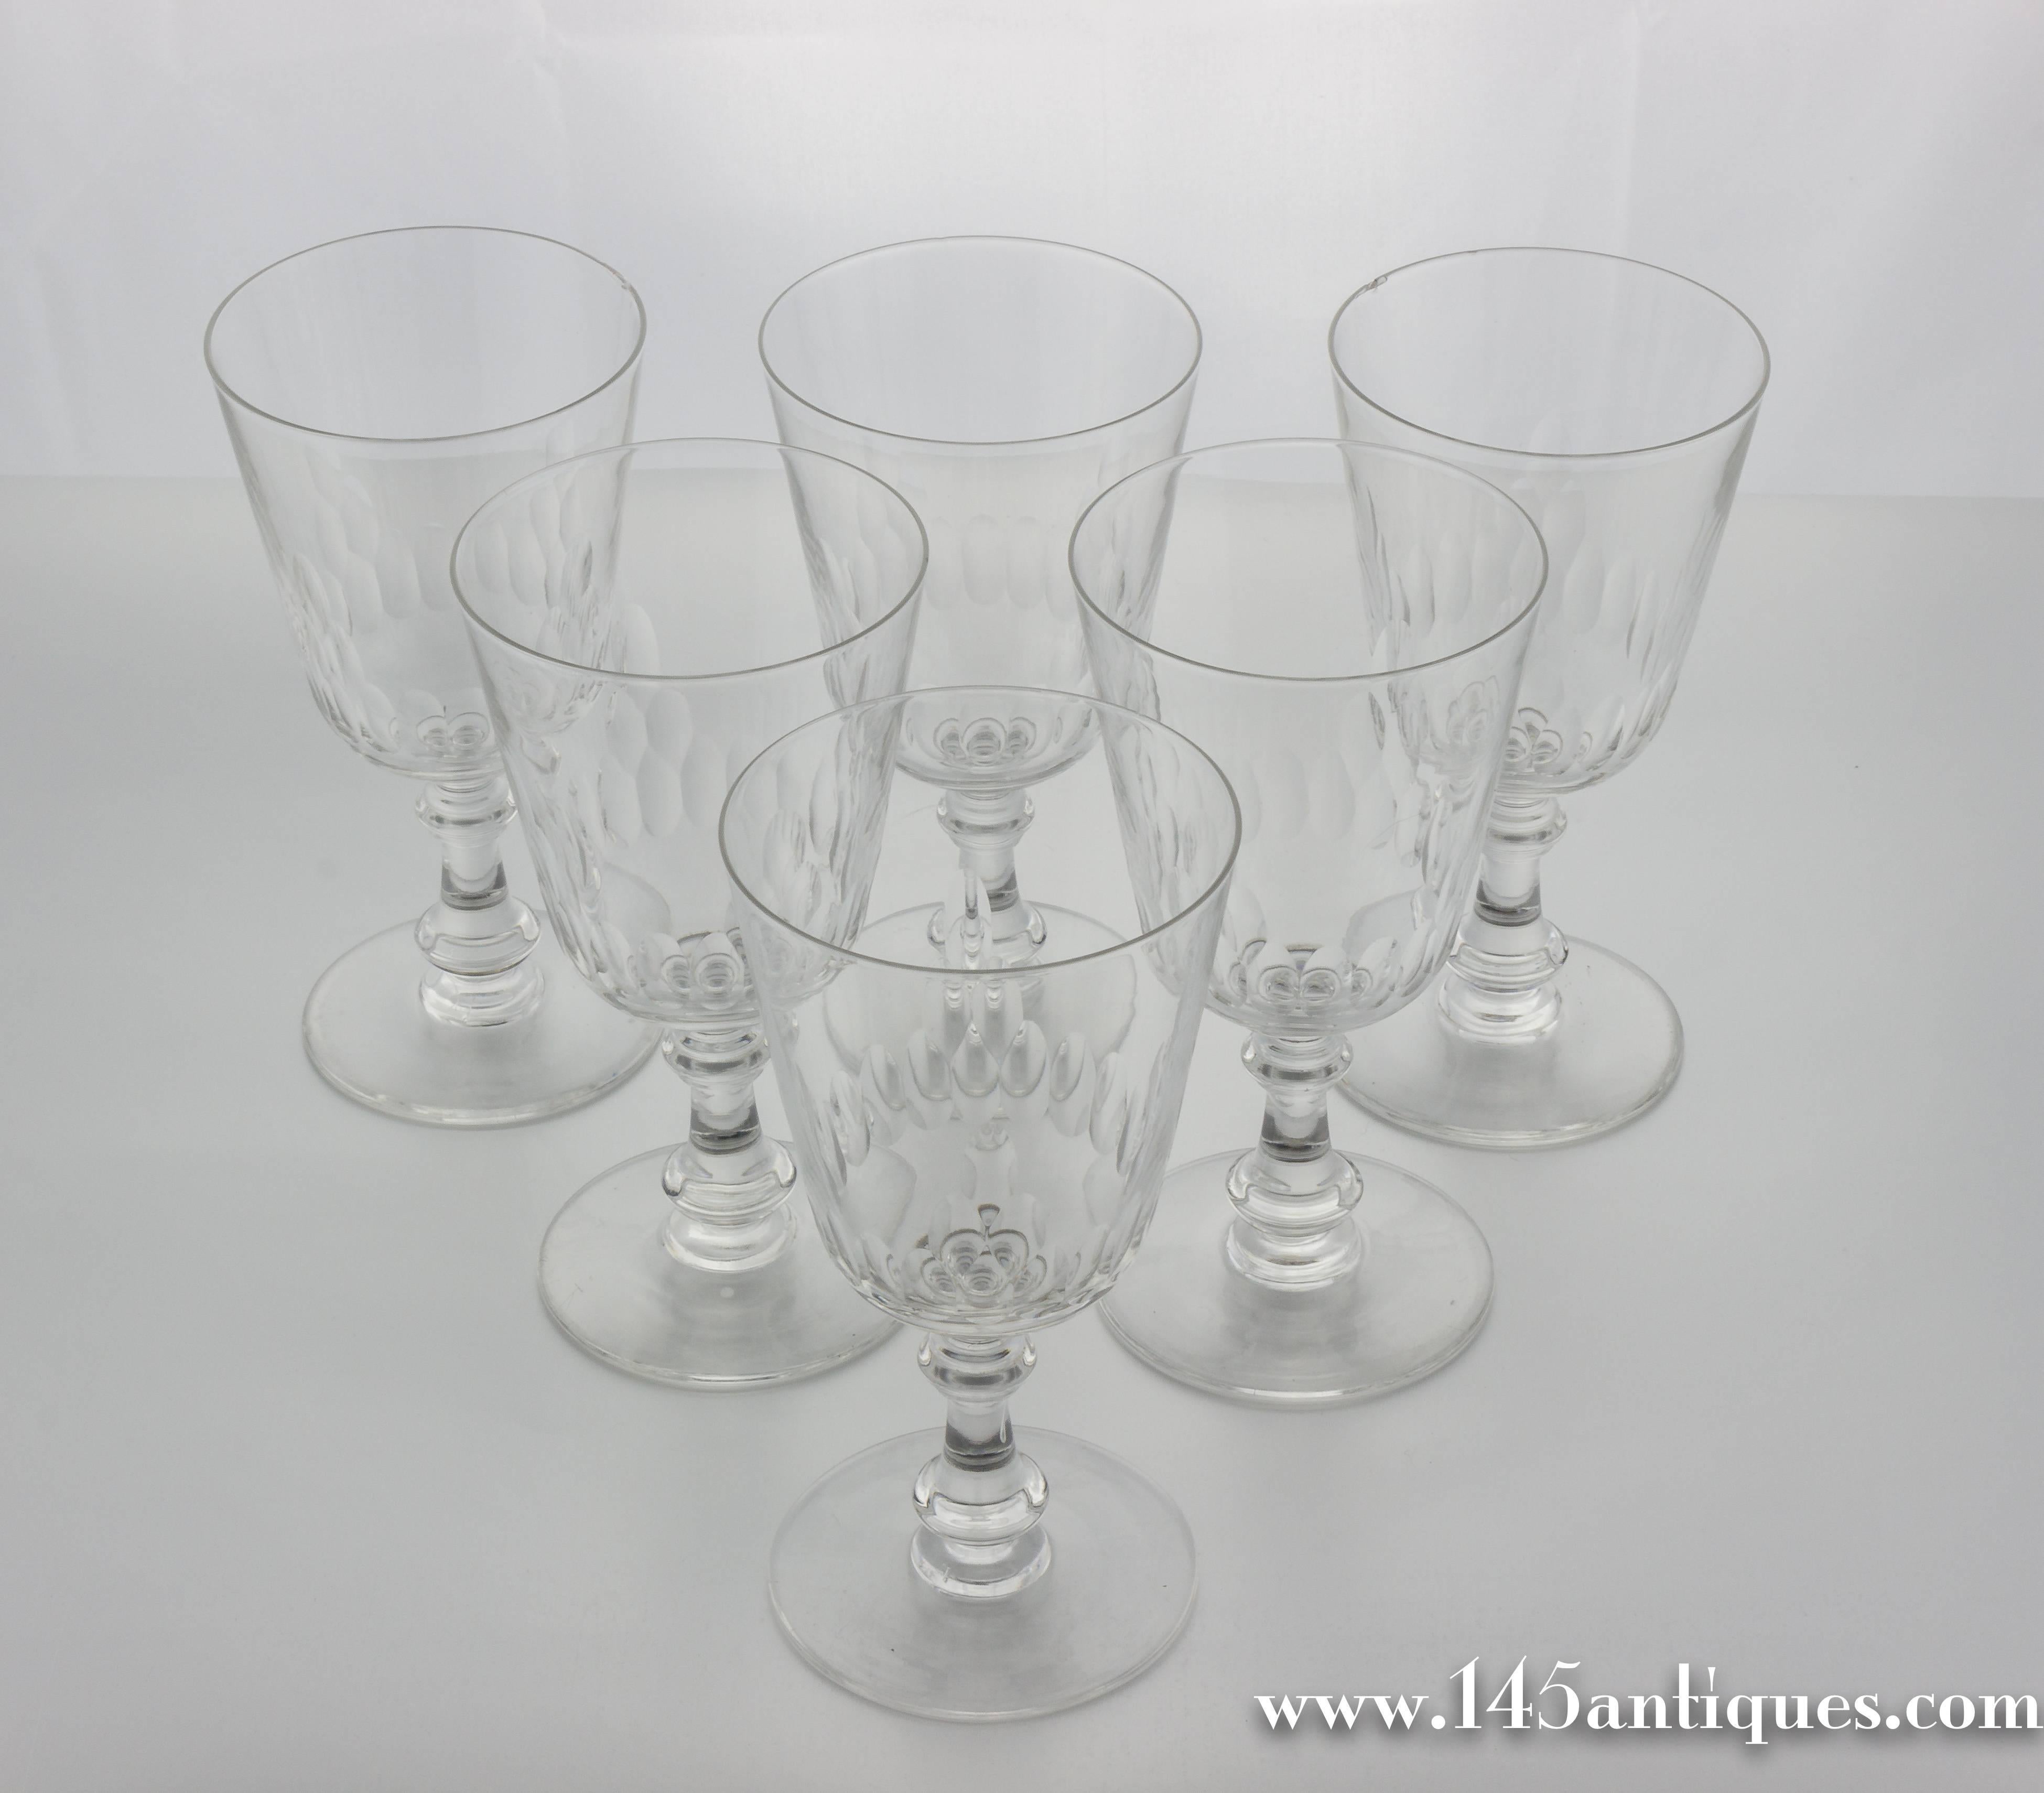 1930s glassware